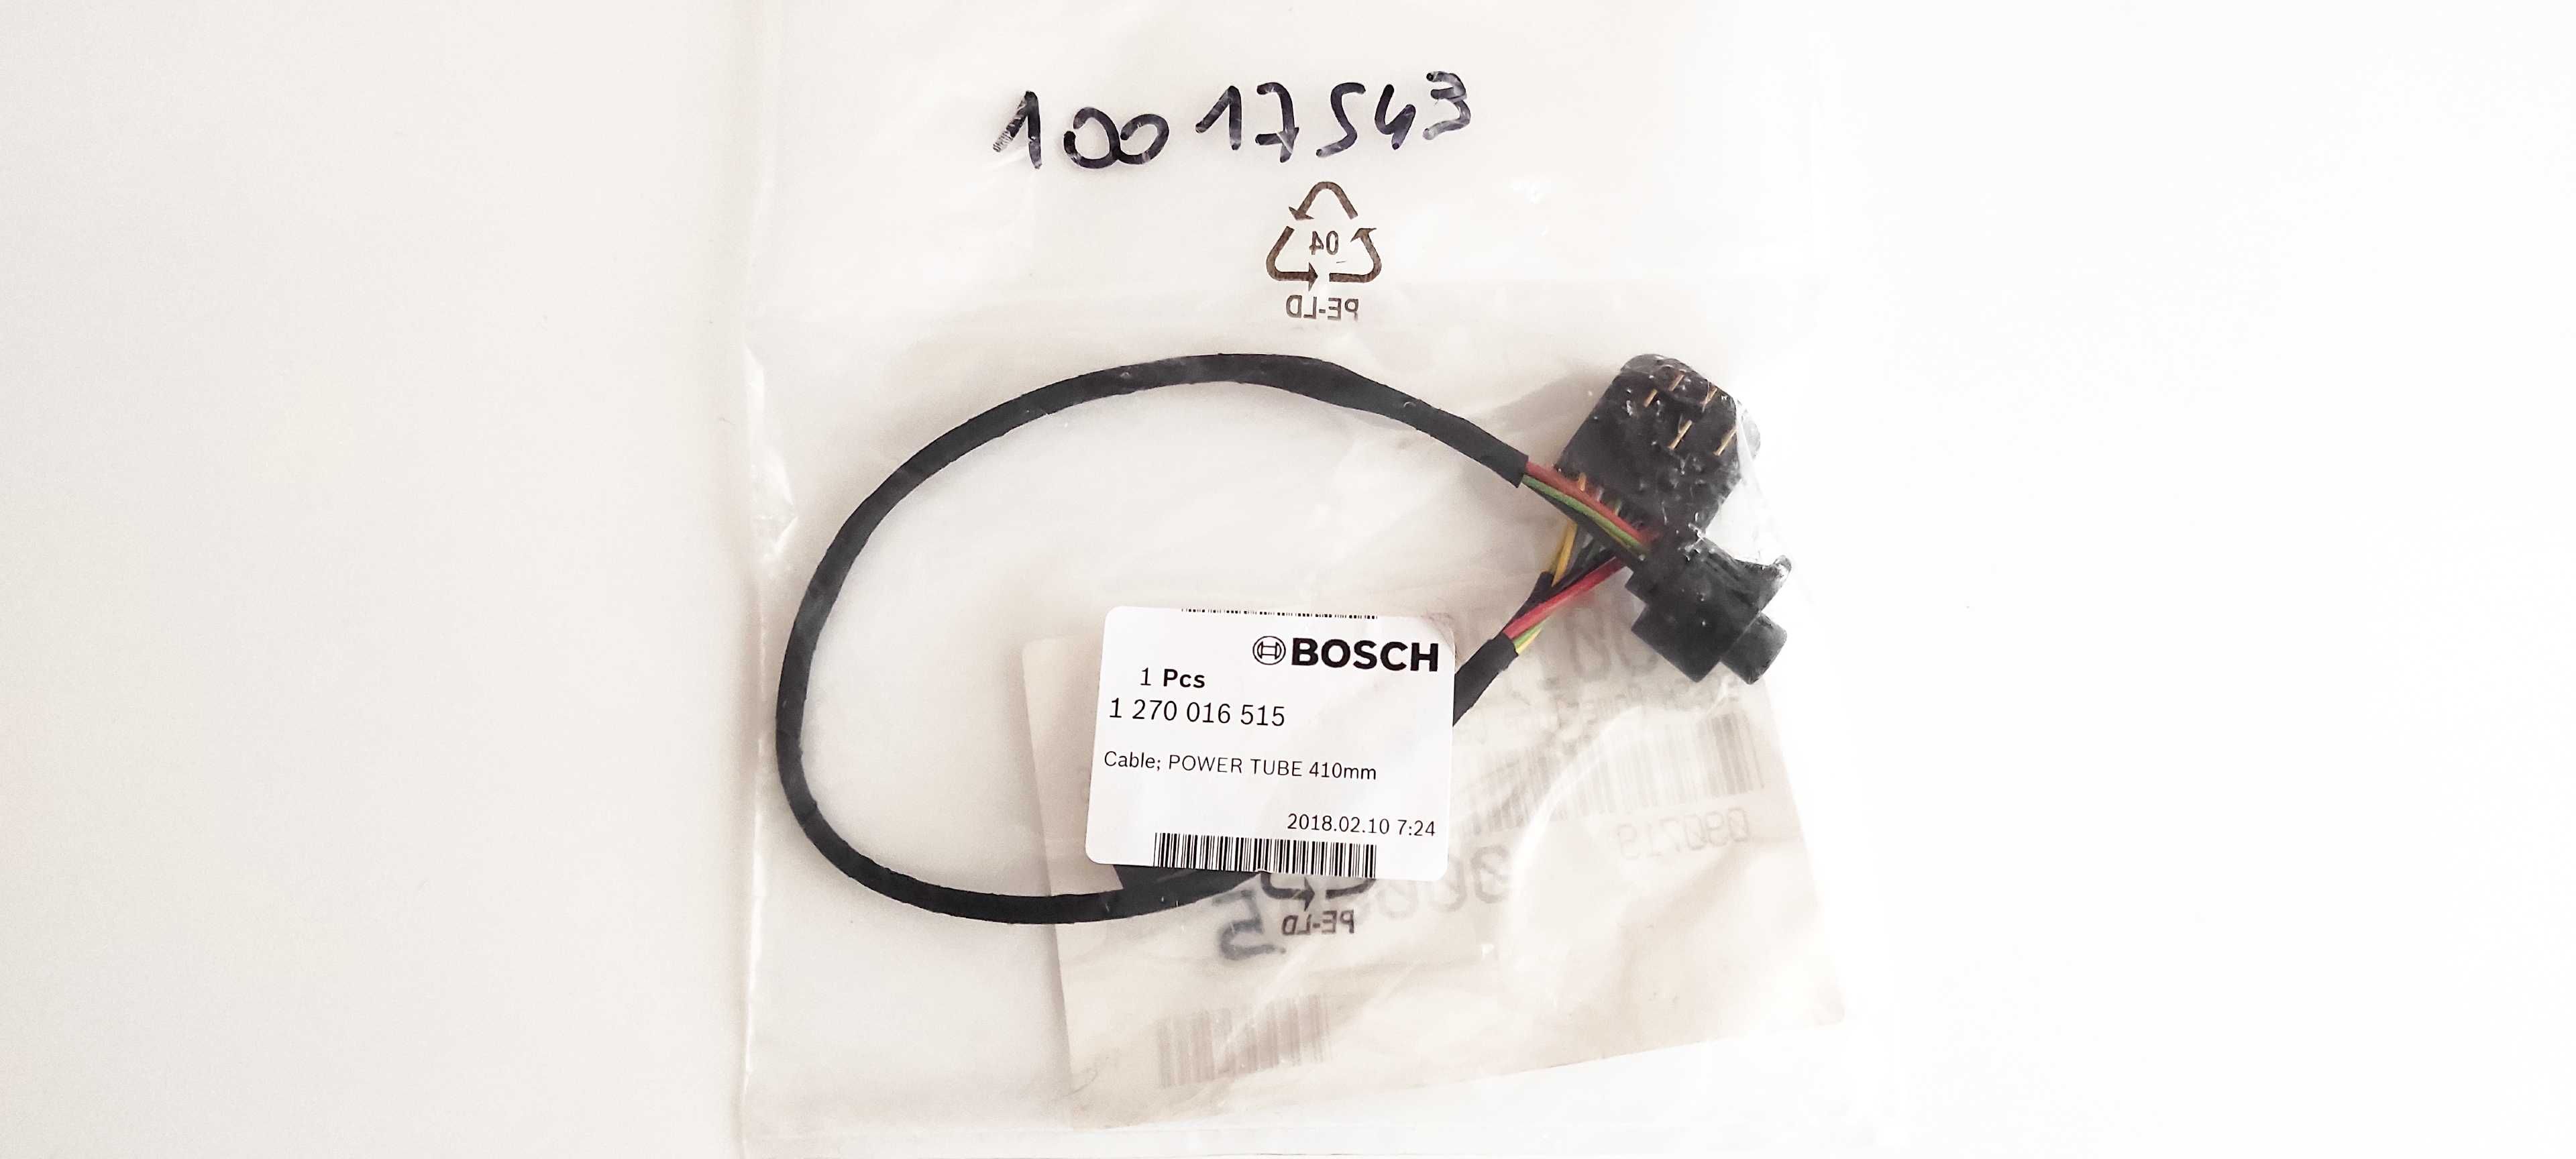 Cablu ebike Bosch pentru baterie PowerTube 410mm nou